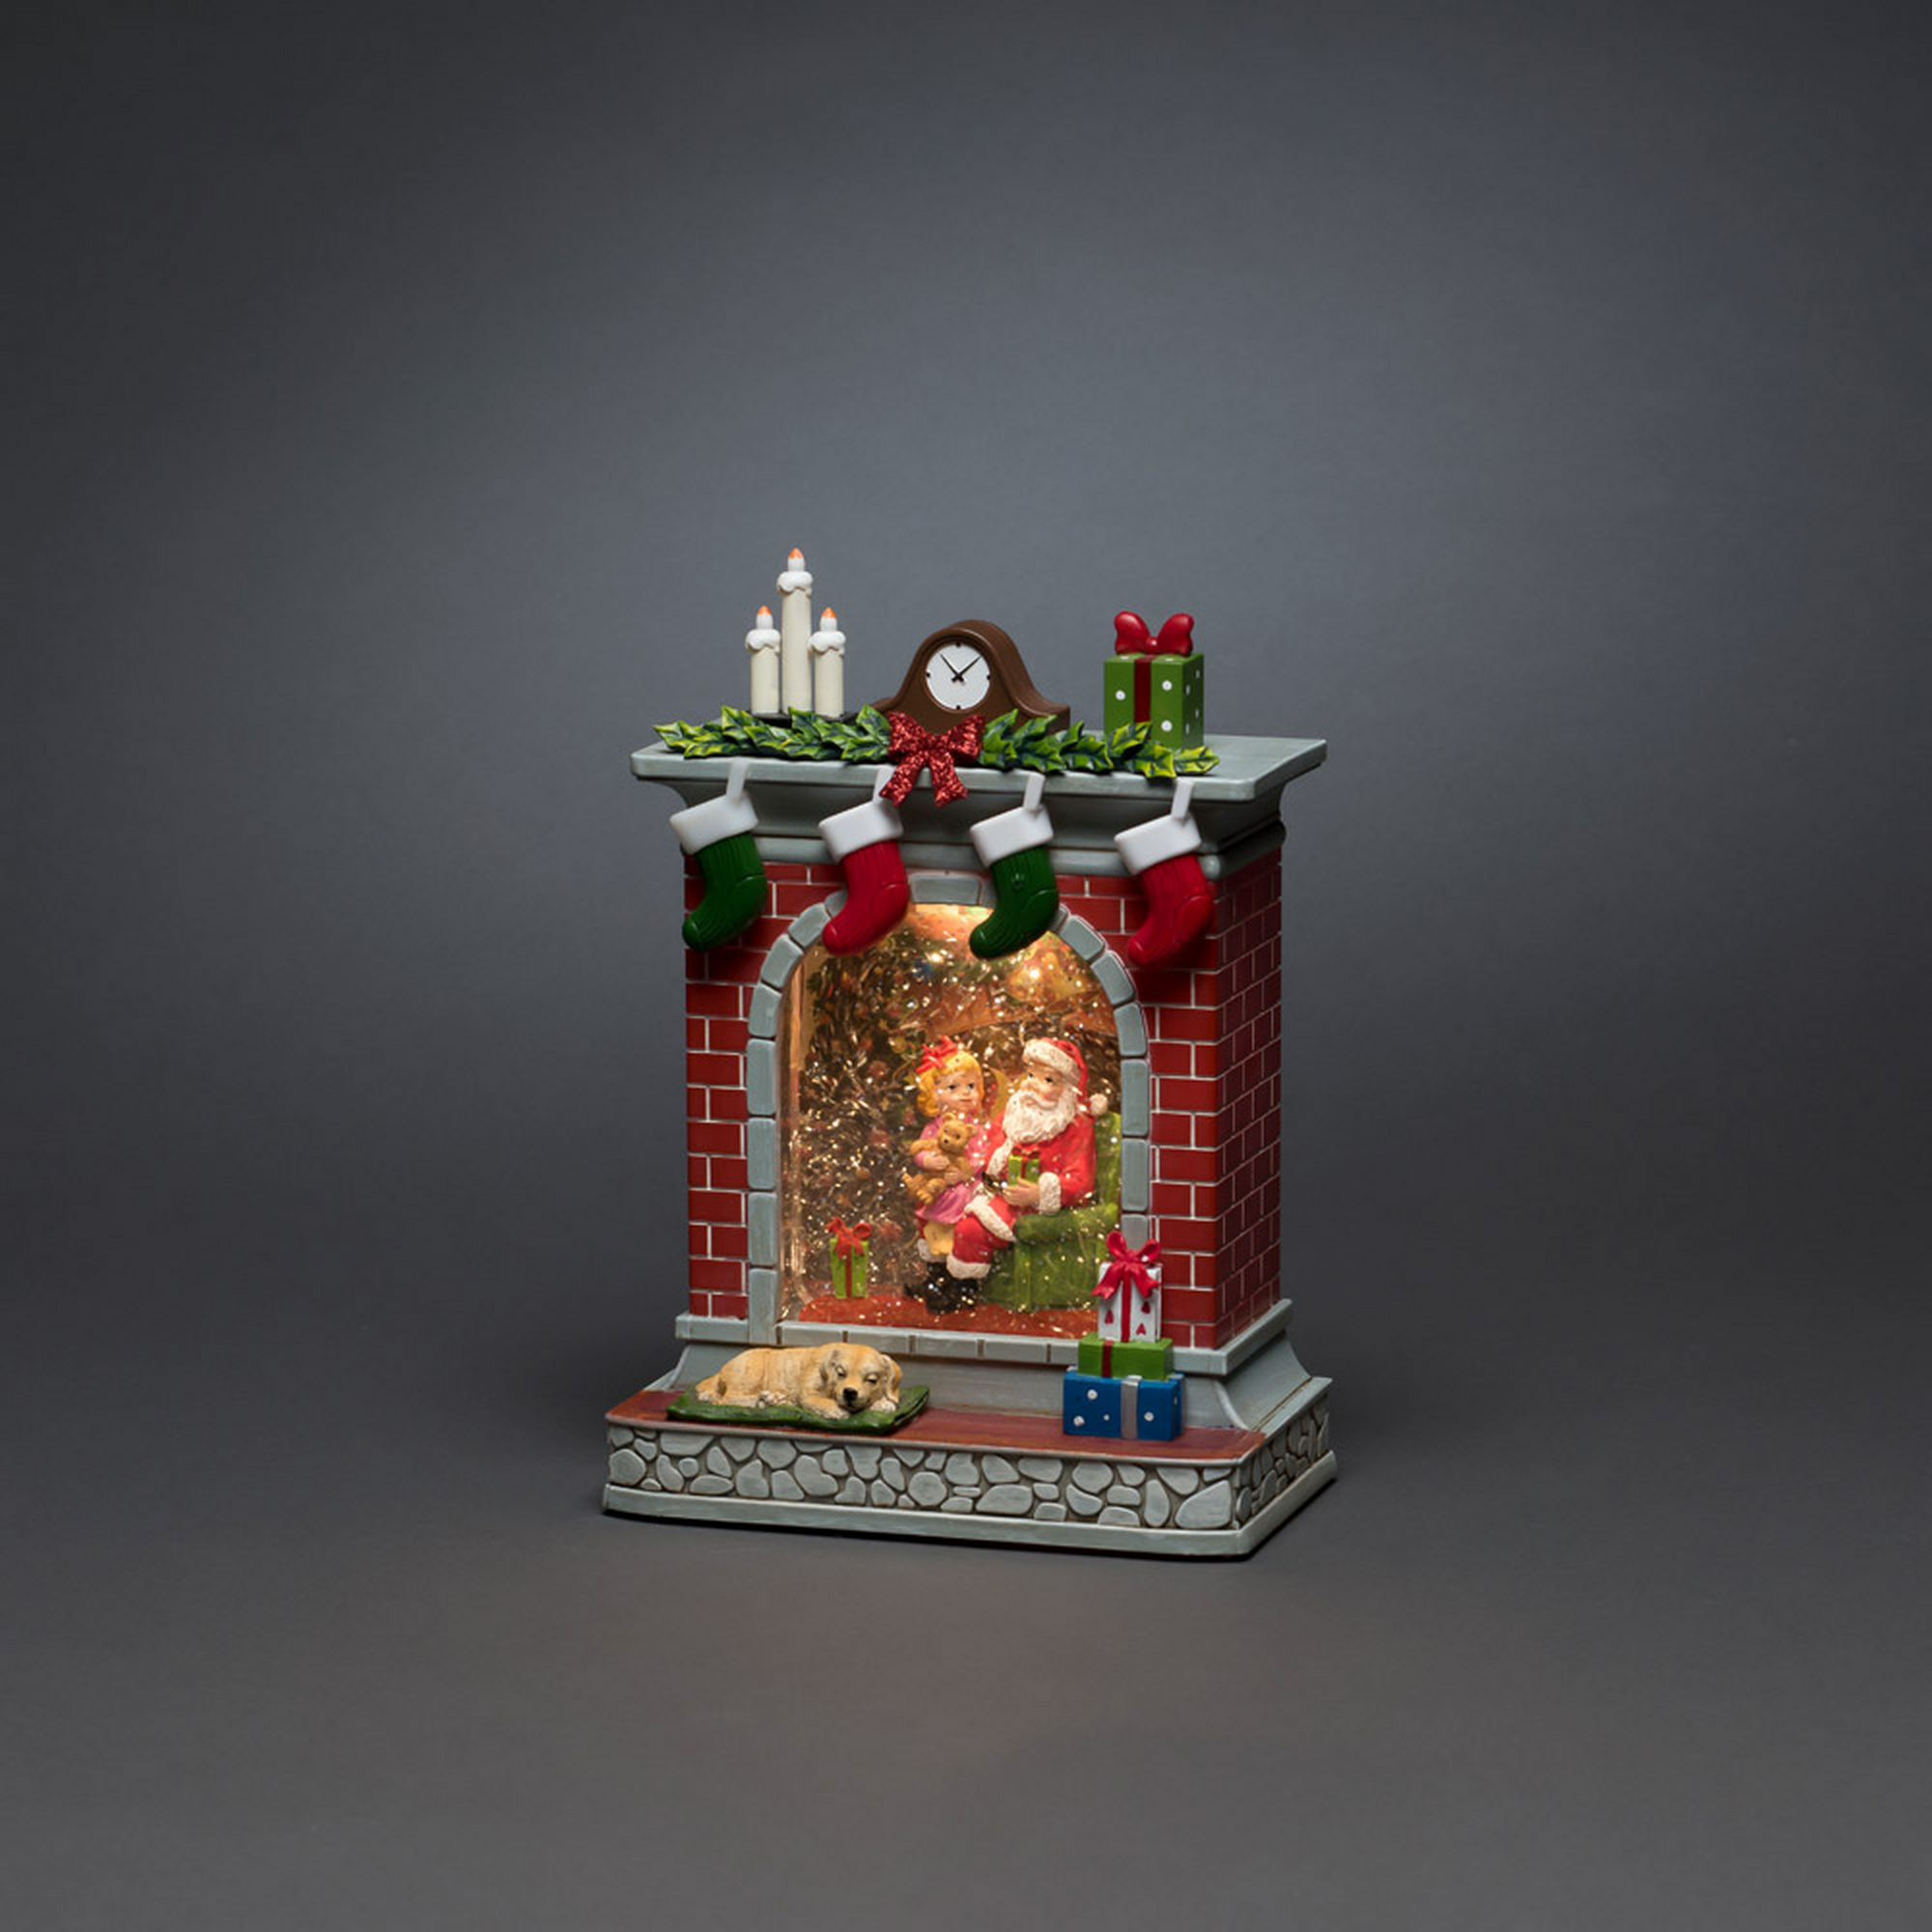 LED-Wasserlaterne 'Kamin mit Weihnachtsmann und Mädchen' 1 LED warmweiß 18 x 10 cm + product picture